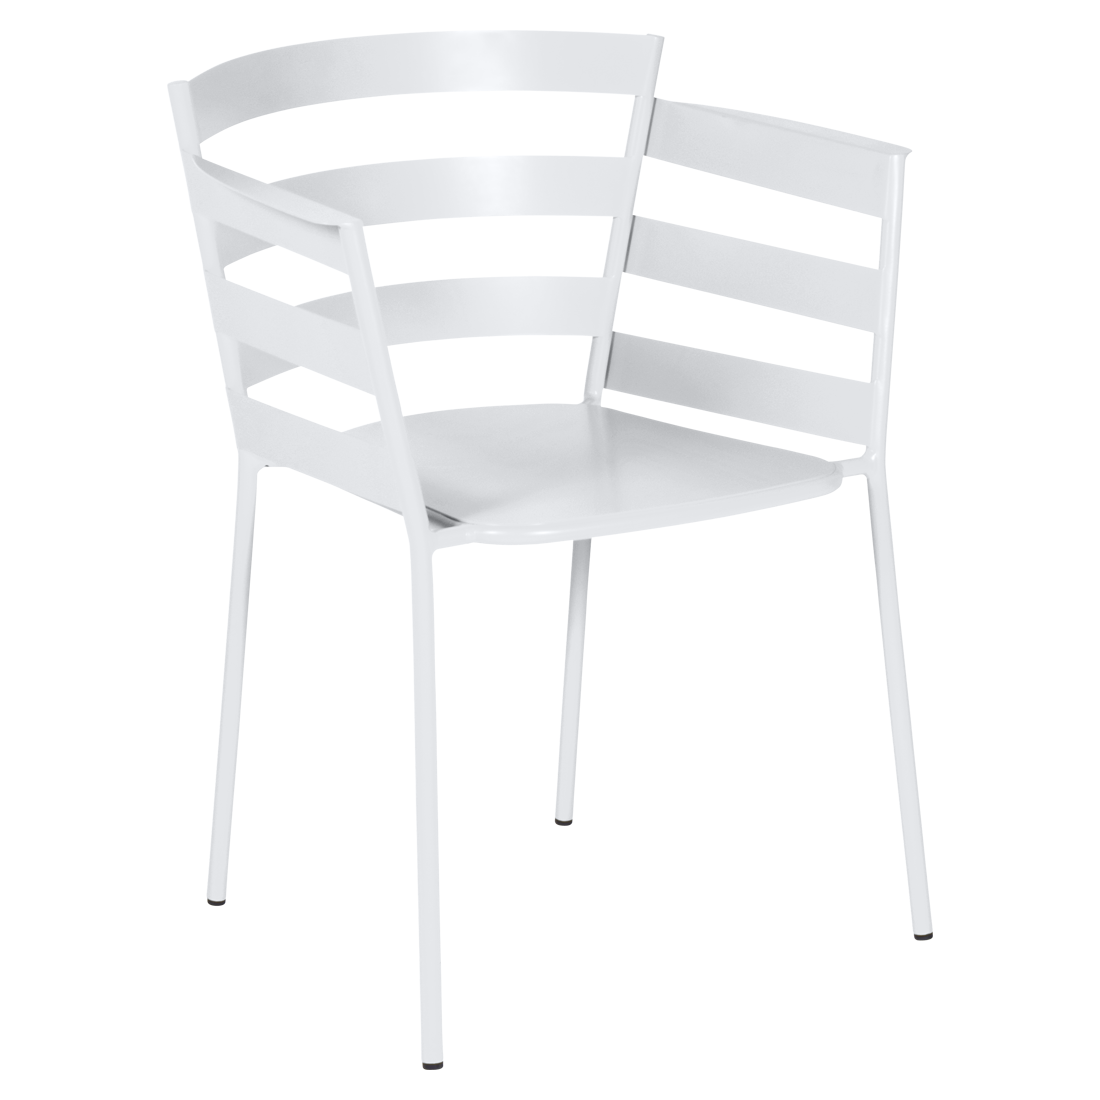 chaise metal design, chaise design, fauteuil de jardin, chaise metal, chaise fermob, fauteuil blanc